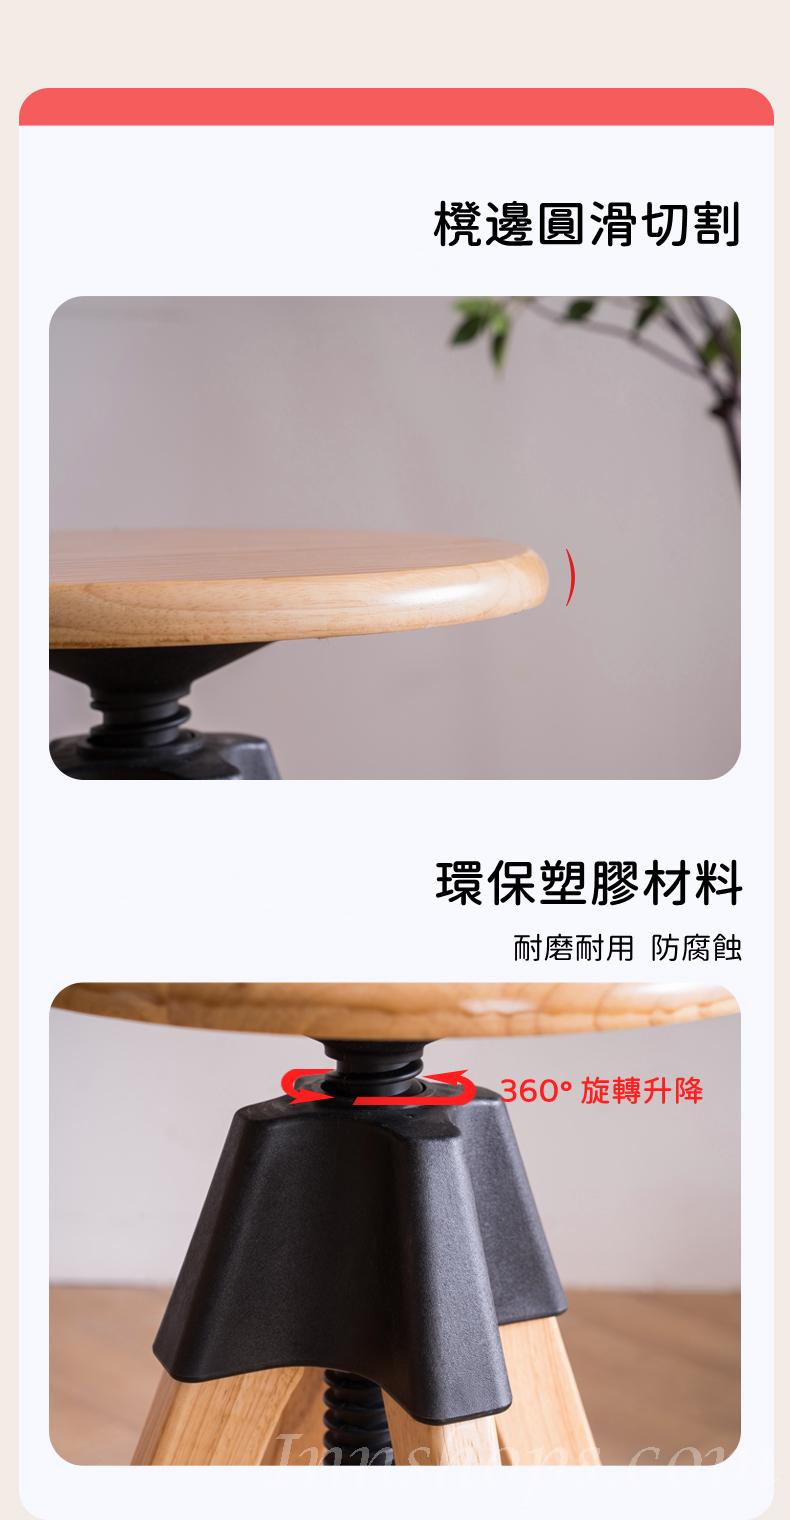 日式實木橡木系列 升降旋轉 高腳凳 吧椅 57-70 / 66-79cm (IS8342)